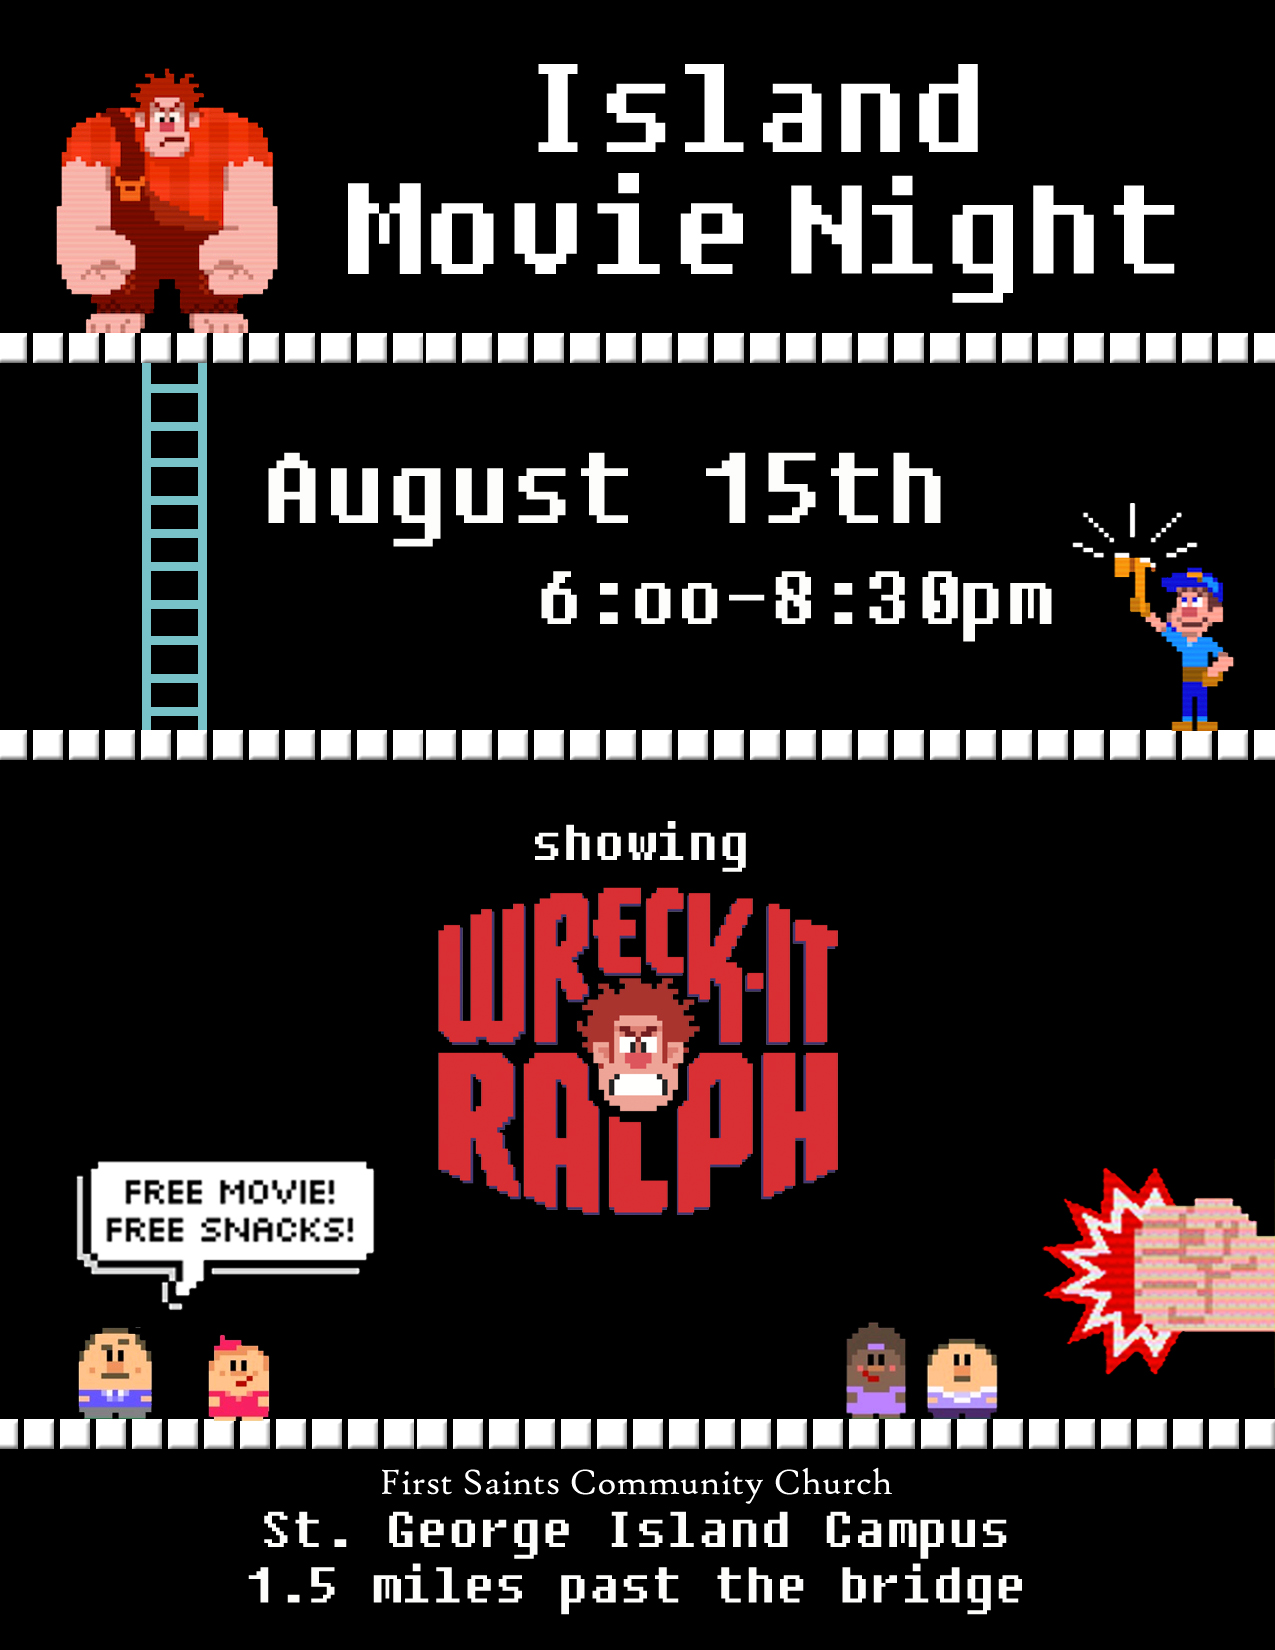 movie night poster